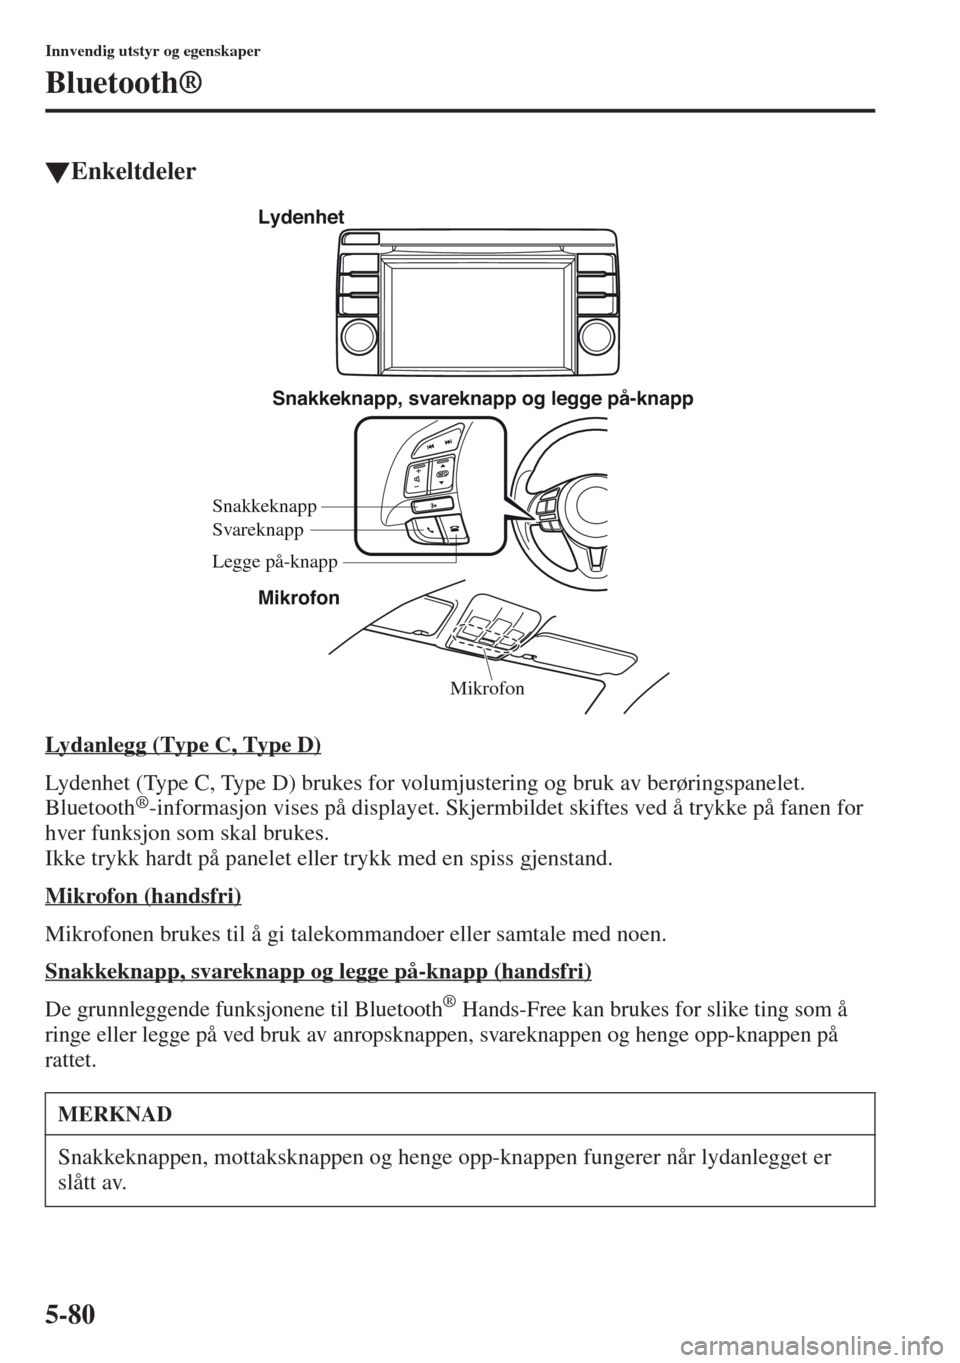 MAZDA MODEL CX-5 2013  Brukerhåndbok (in Norwegian) 5-80
Innvendig utstyr og egenskaper
Bluetooth®
tEnkeltdeler
Lydanlegg (Type C, Type D)
Lydenhet (Type C, Type D) brukes for volumjustering og bruk av berøringspanelet. 
Bluetooth®-informasjon vises